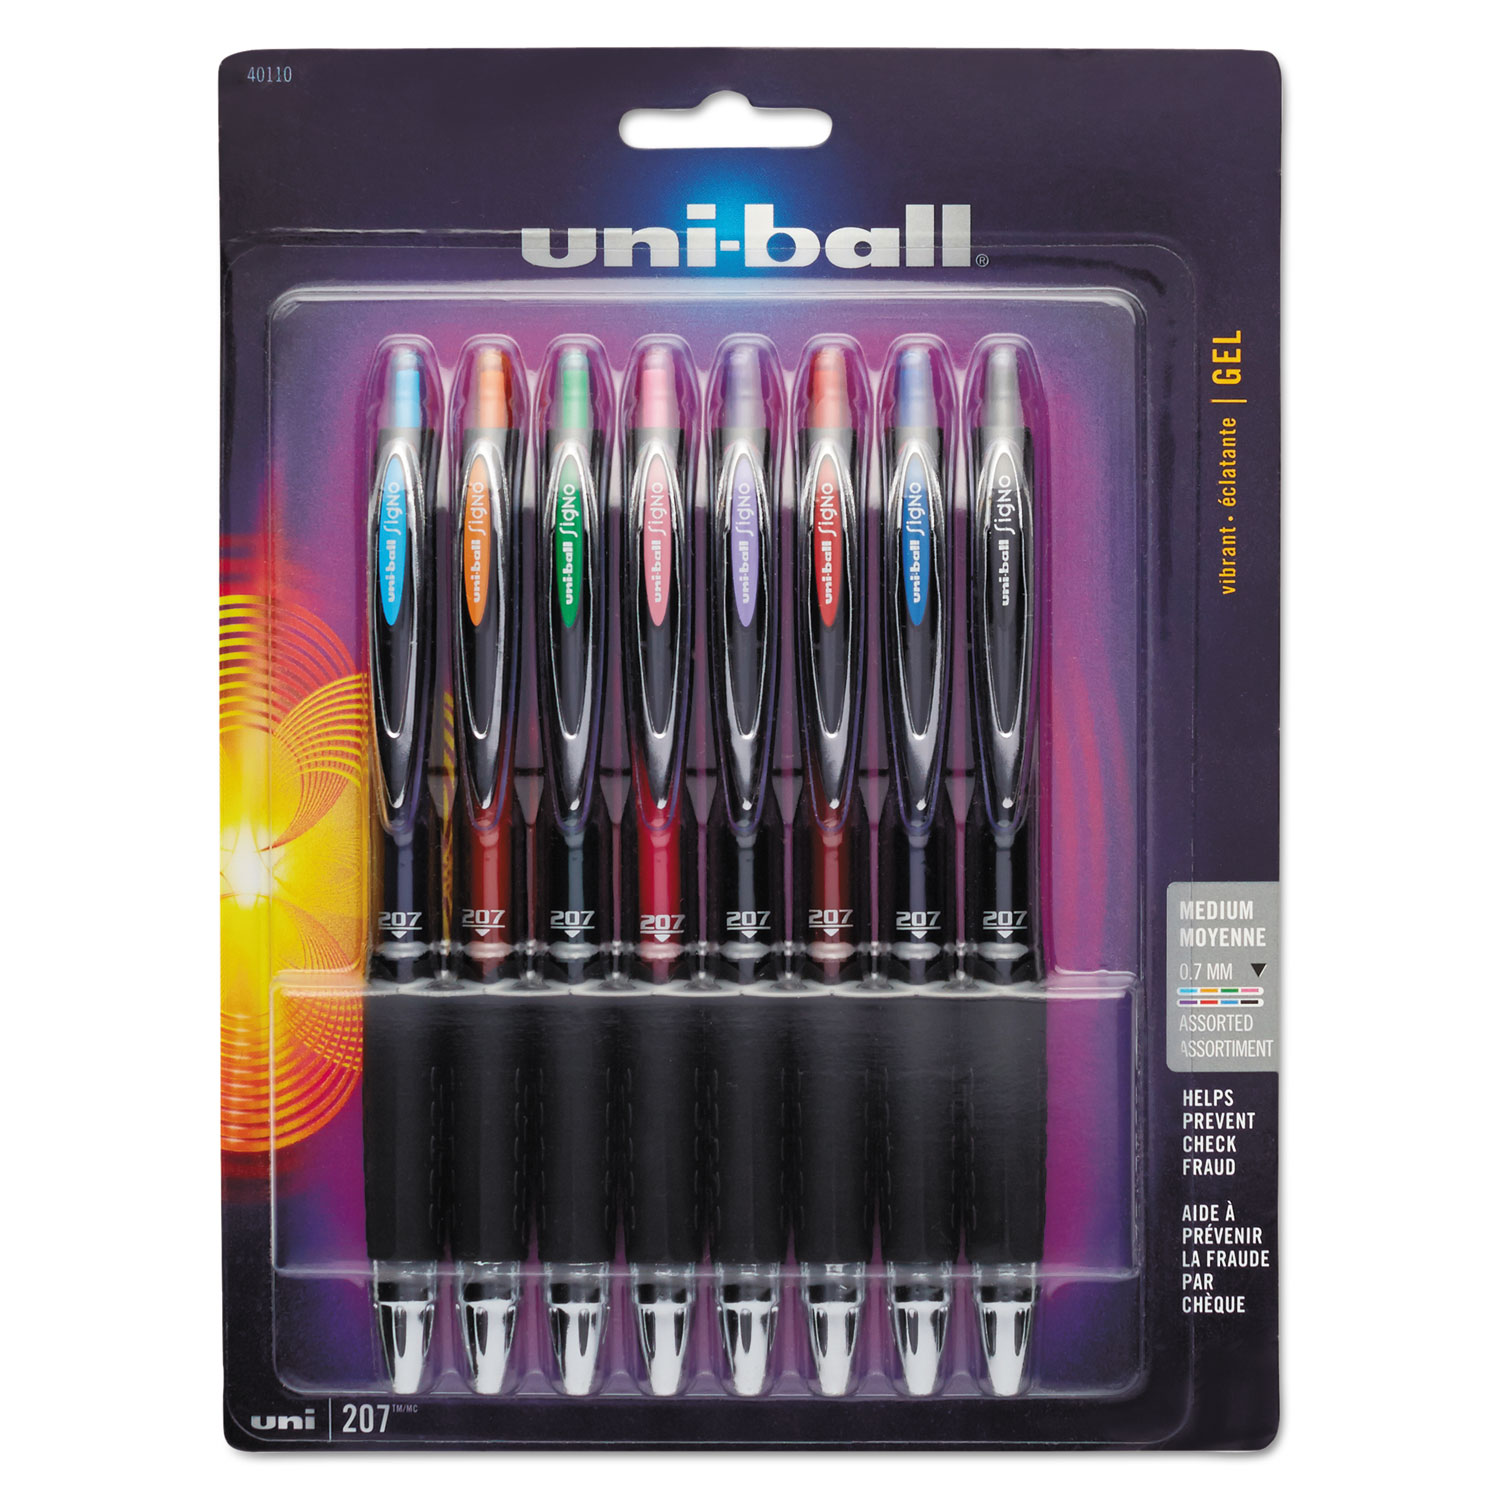  uni-ball 40110 Signo 207 Retractable Gel Pen, Medium 0.7mm, Assorted Ink, Black Barrel, 8/Set (UBC40110) 